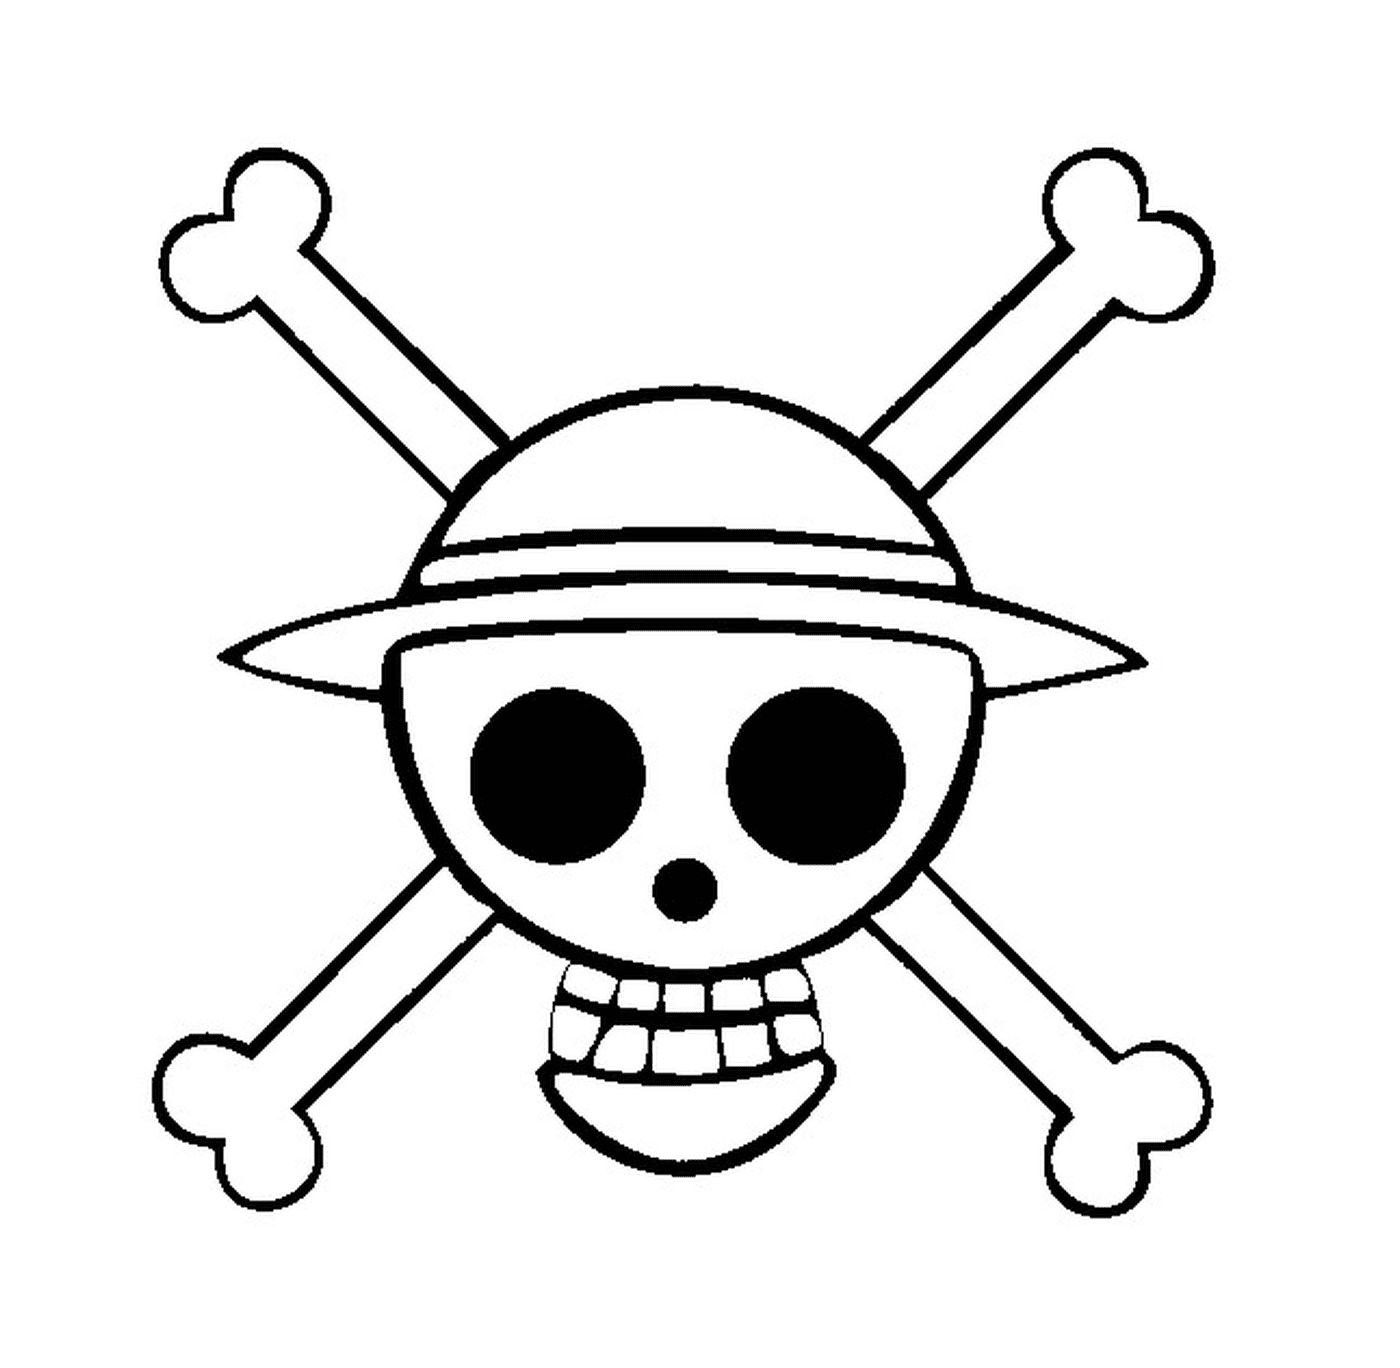  Logotipo de una pieza, símbolo pirata 